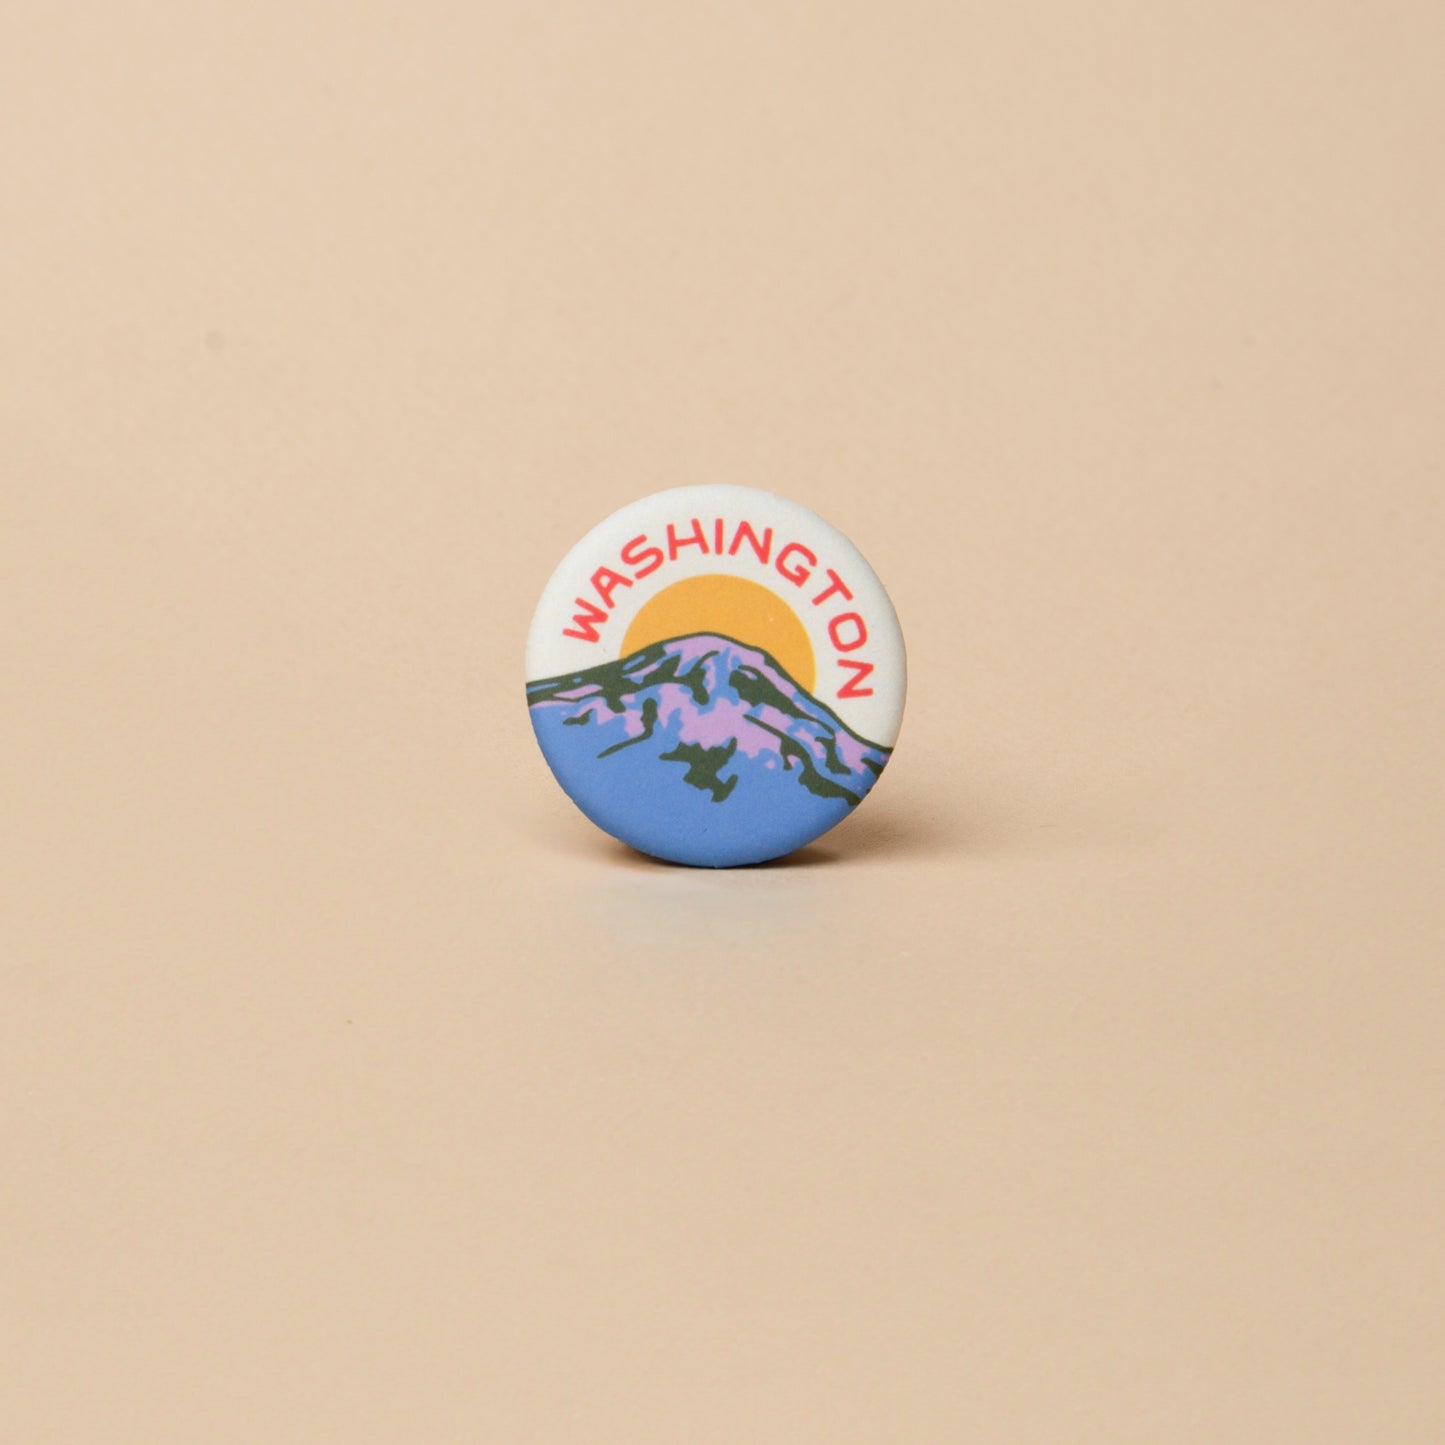 Rainier Washington Button